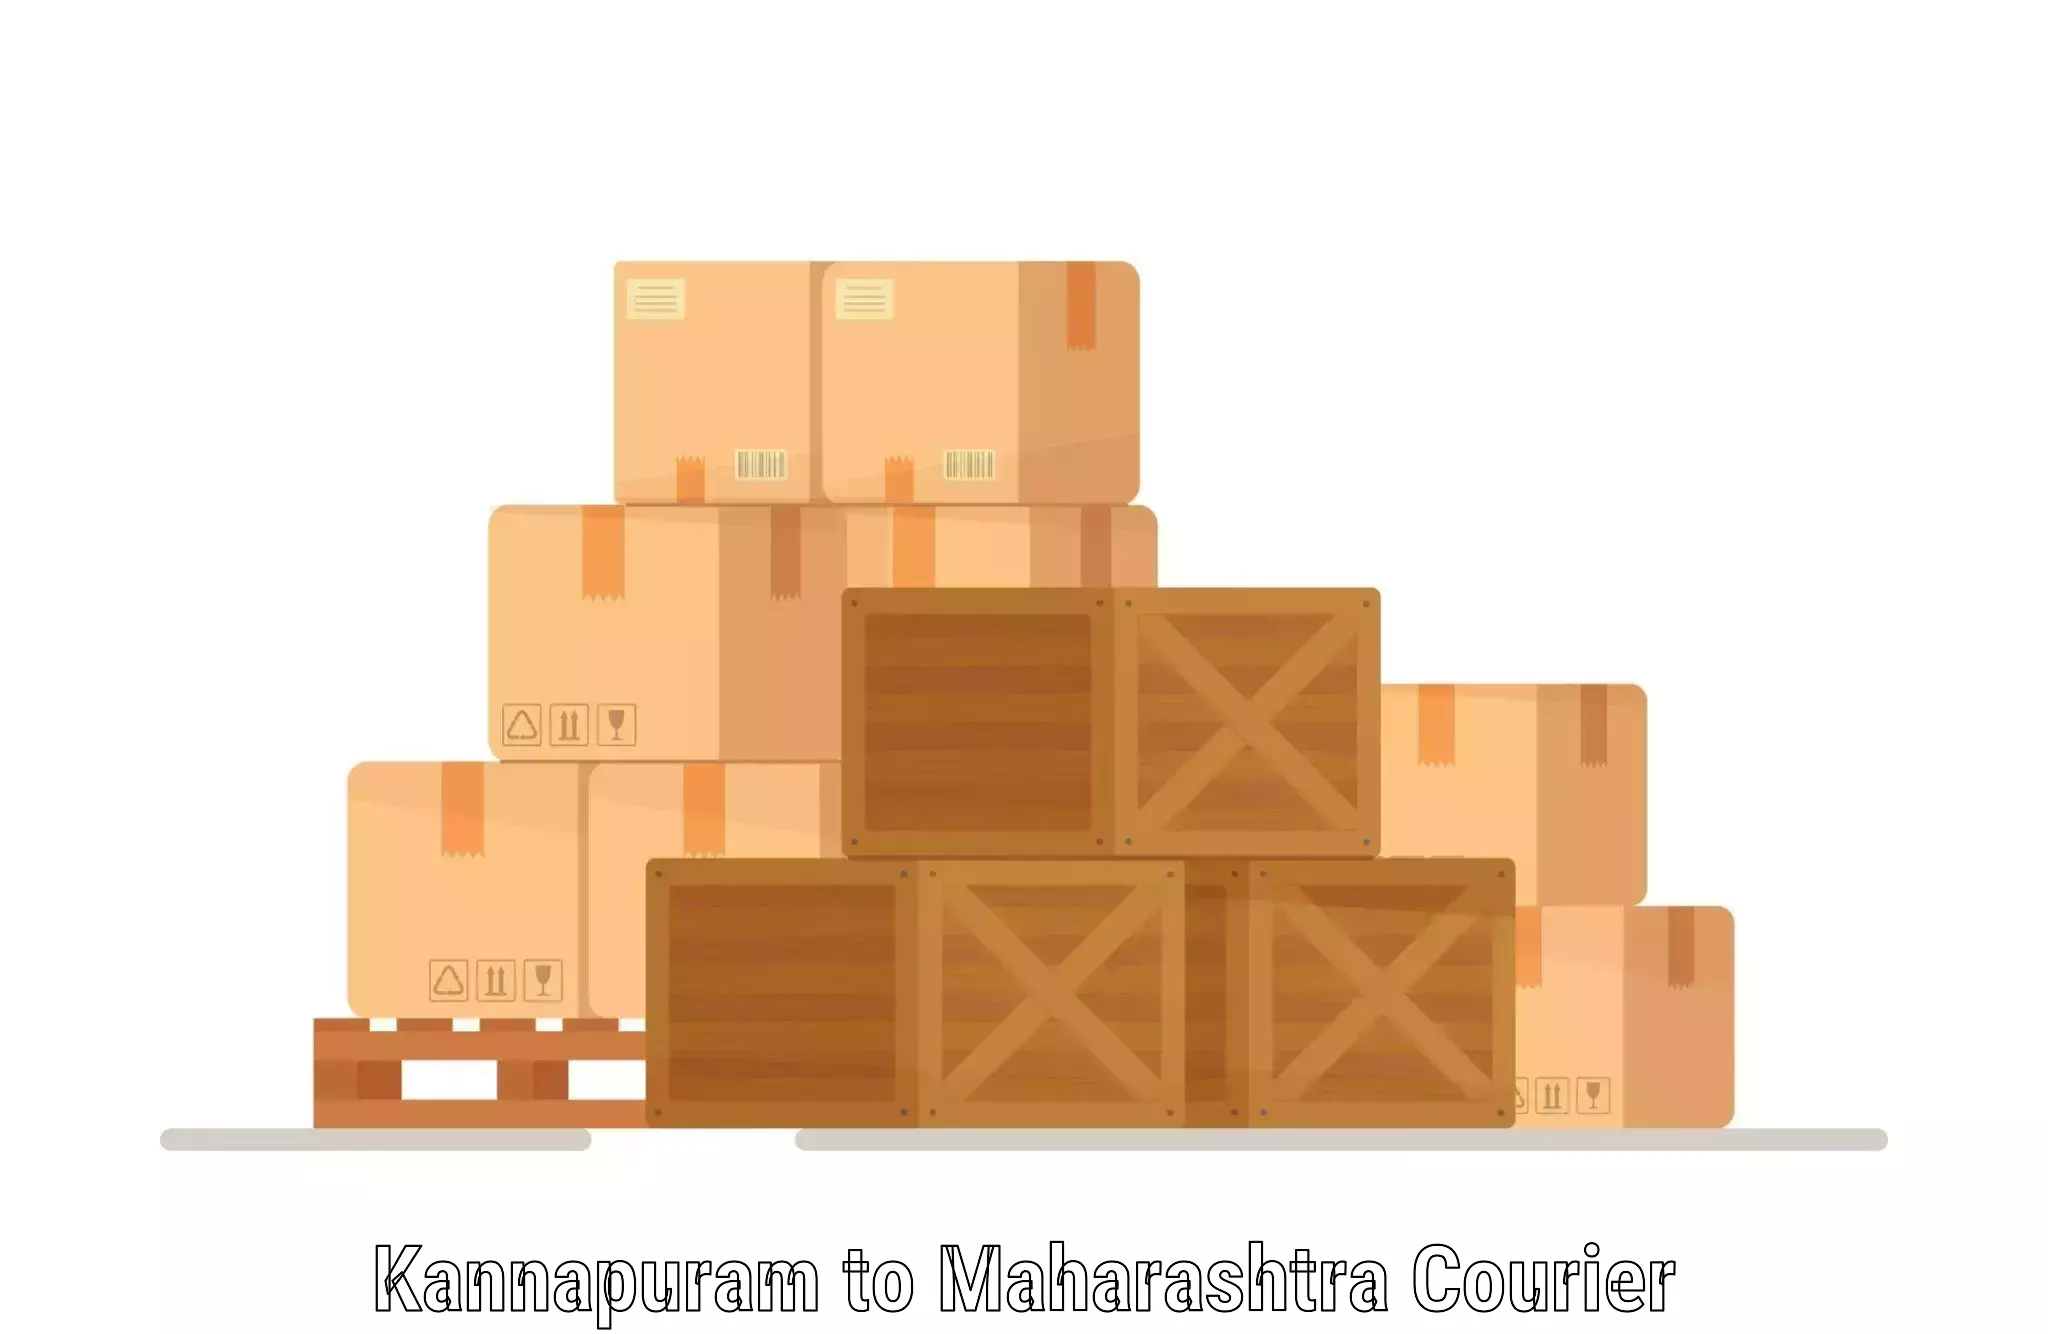 Nationwide shipping capabilities Kannapuram to IIIT Pune